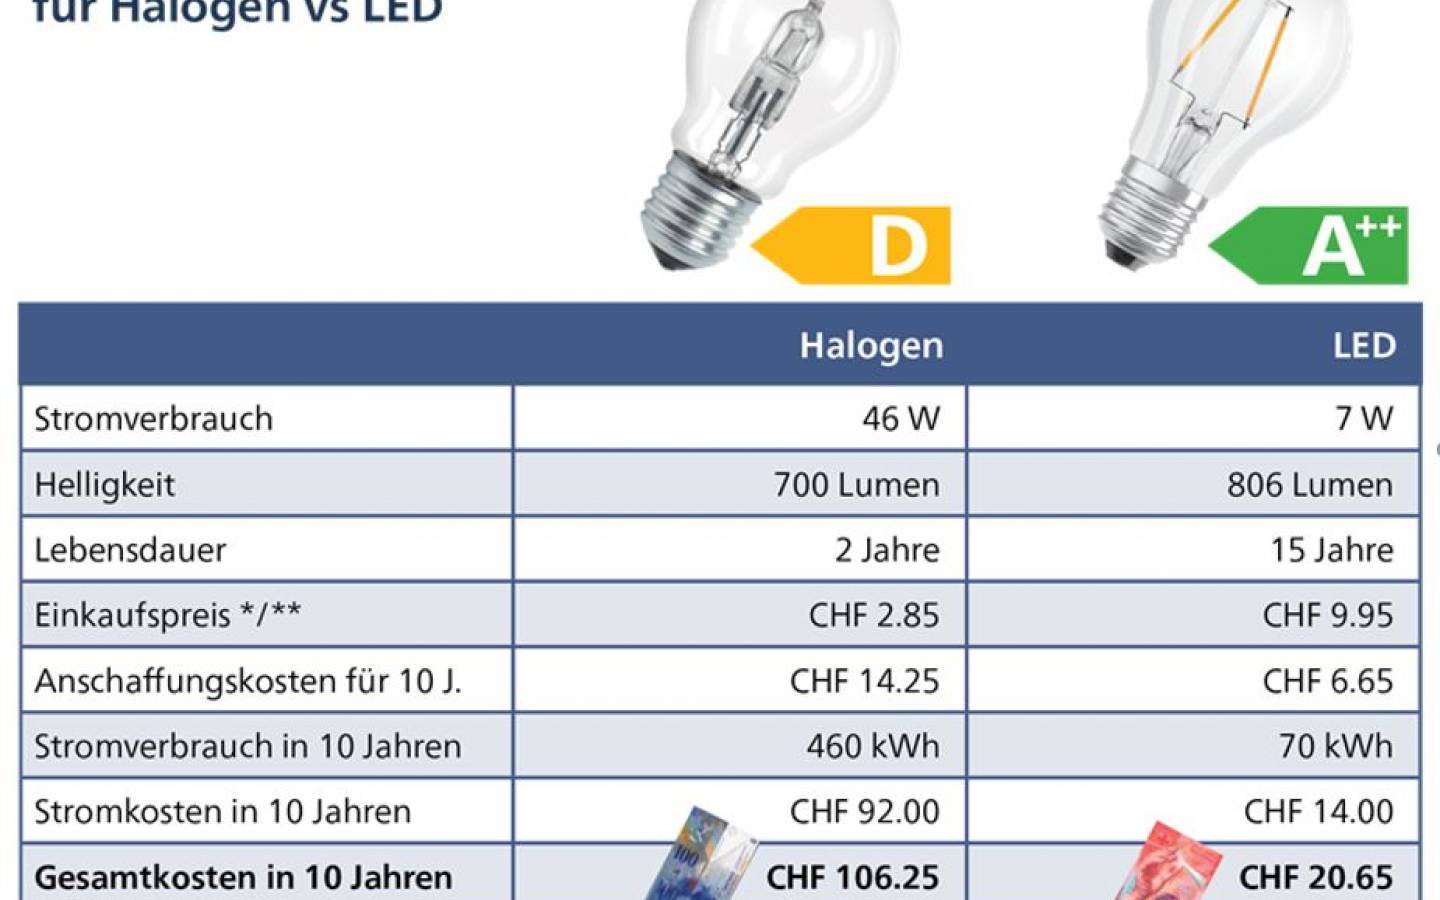 Les ampoules halogènes interdites à partir du 1er septembre 20